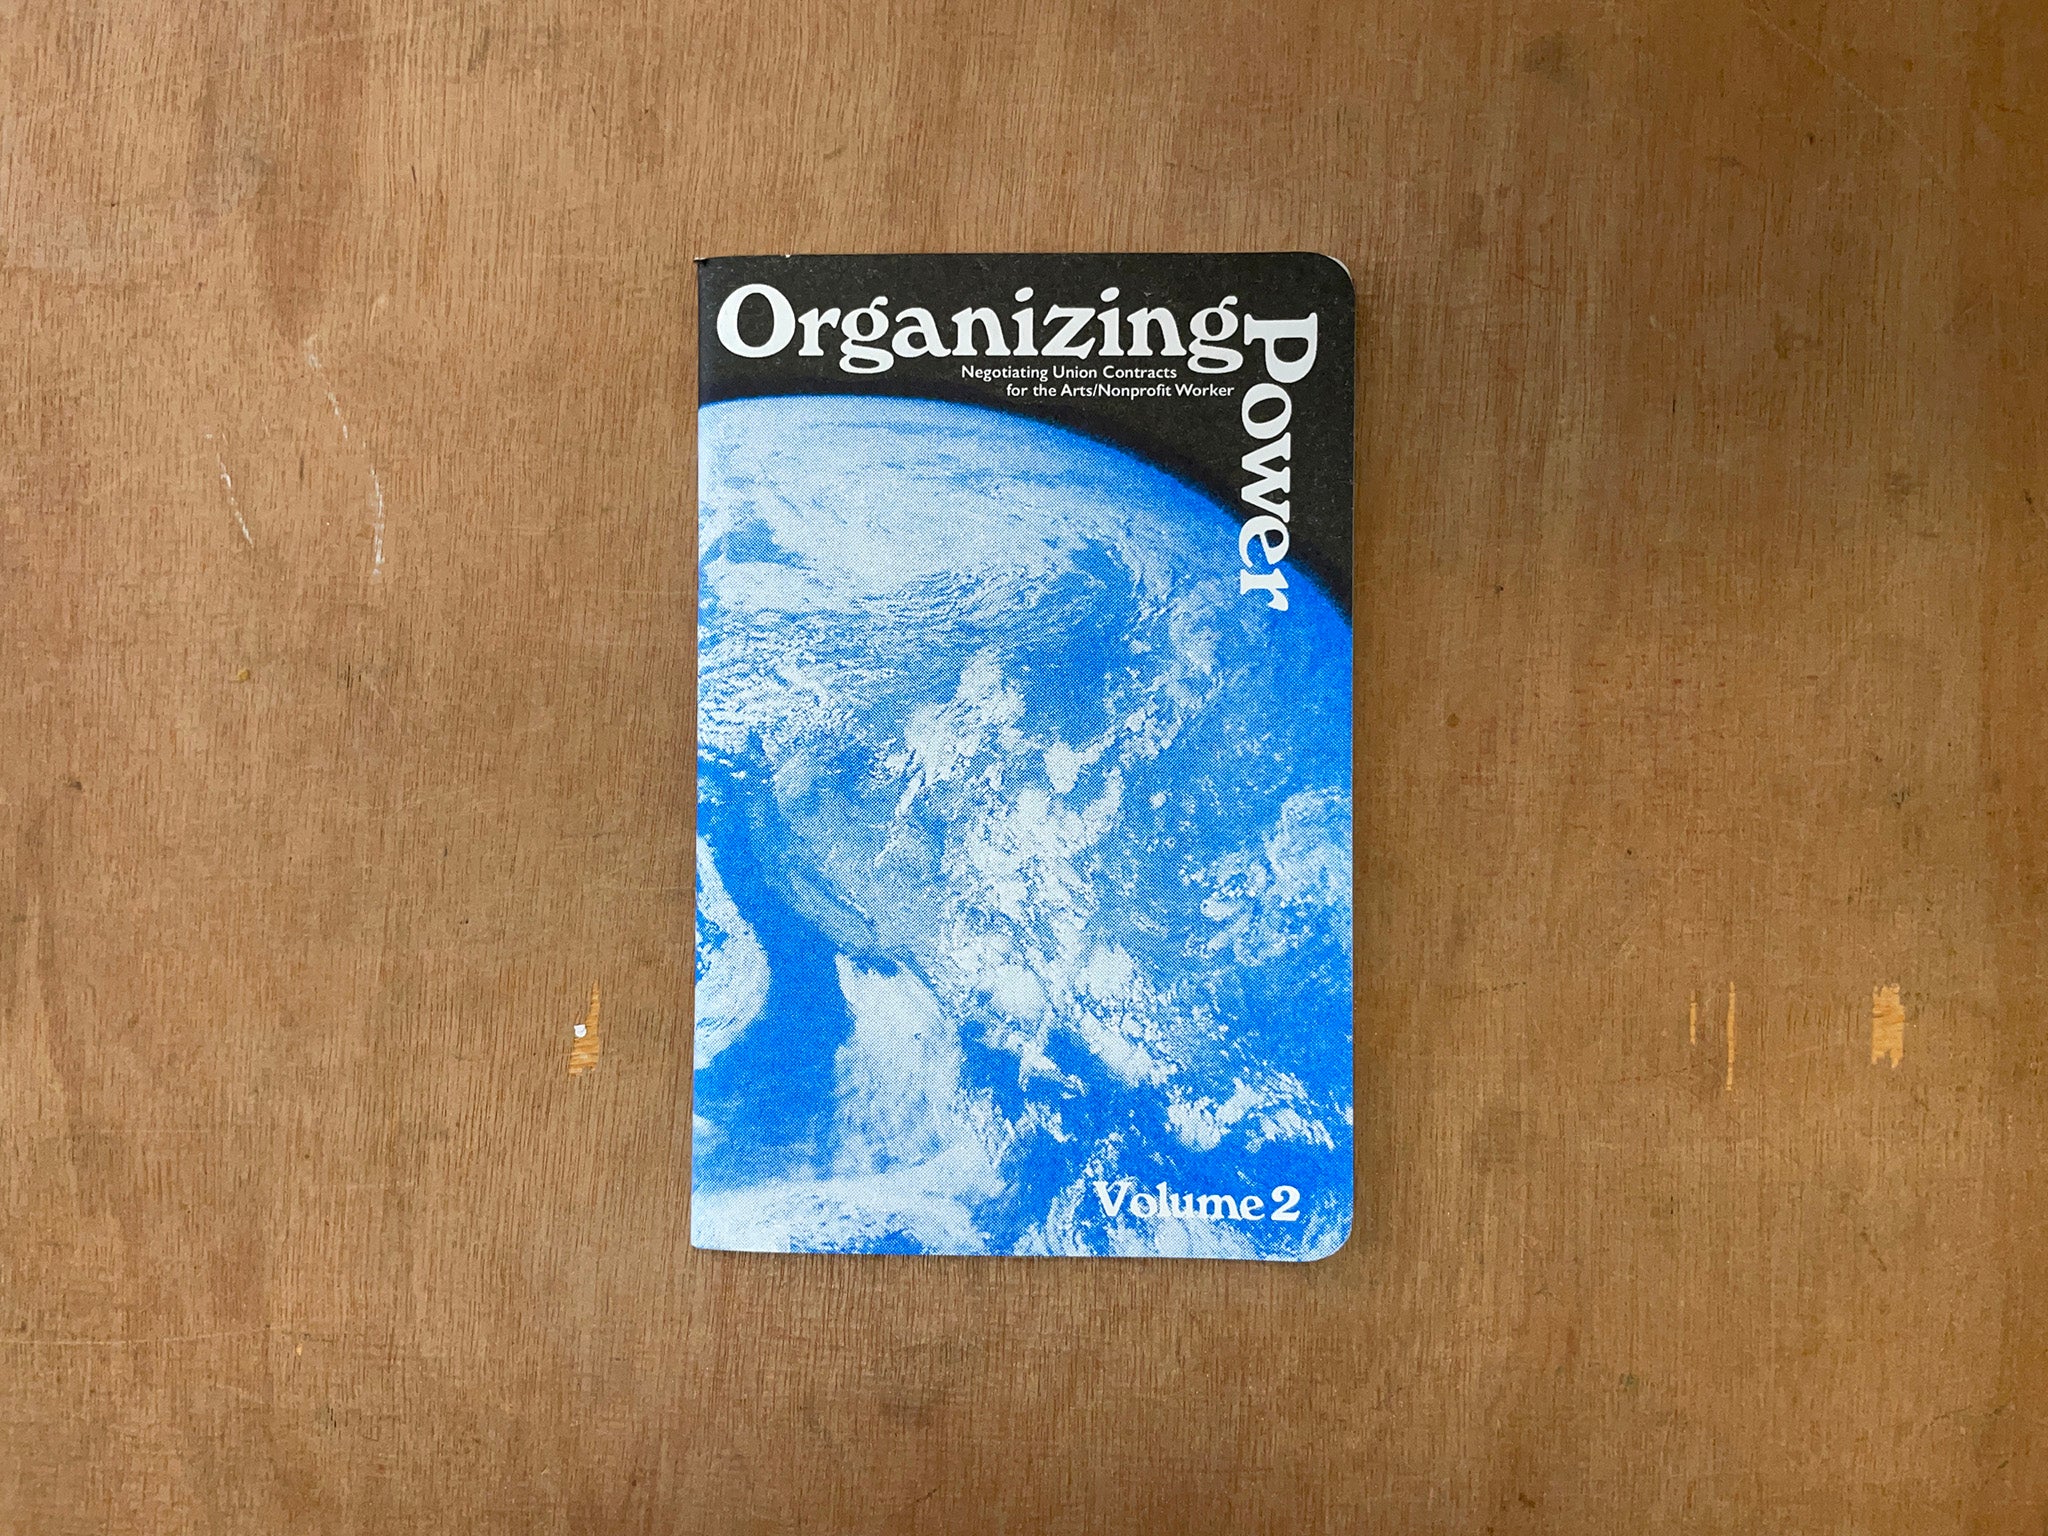 ORGANIZING POWER VOLUME 2 by Jessalyn Aaland, Ana Fox-Hodess & Martin Oropeza